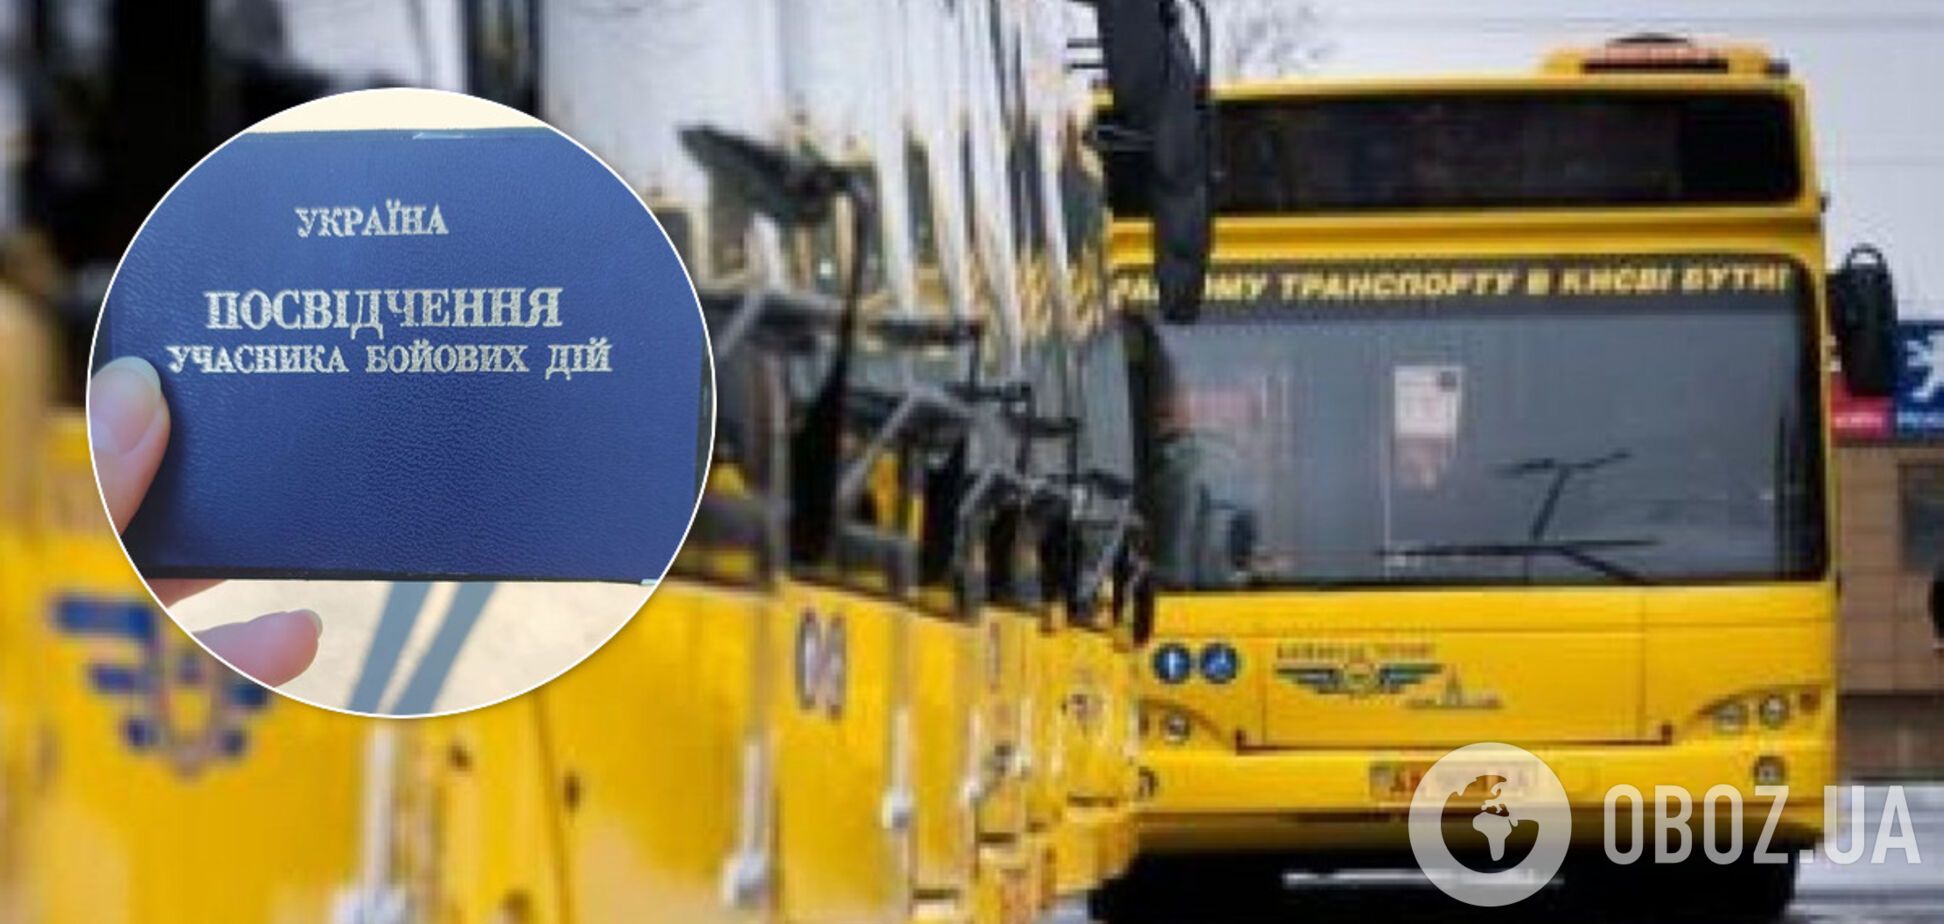 У Києві ветеранку не пустили в автобус з УБД